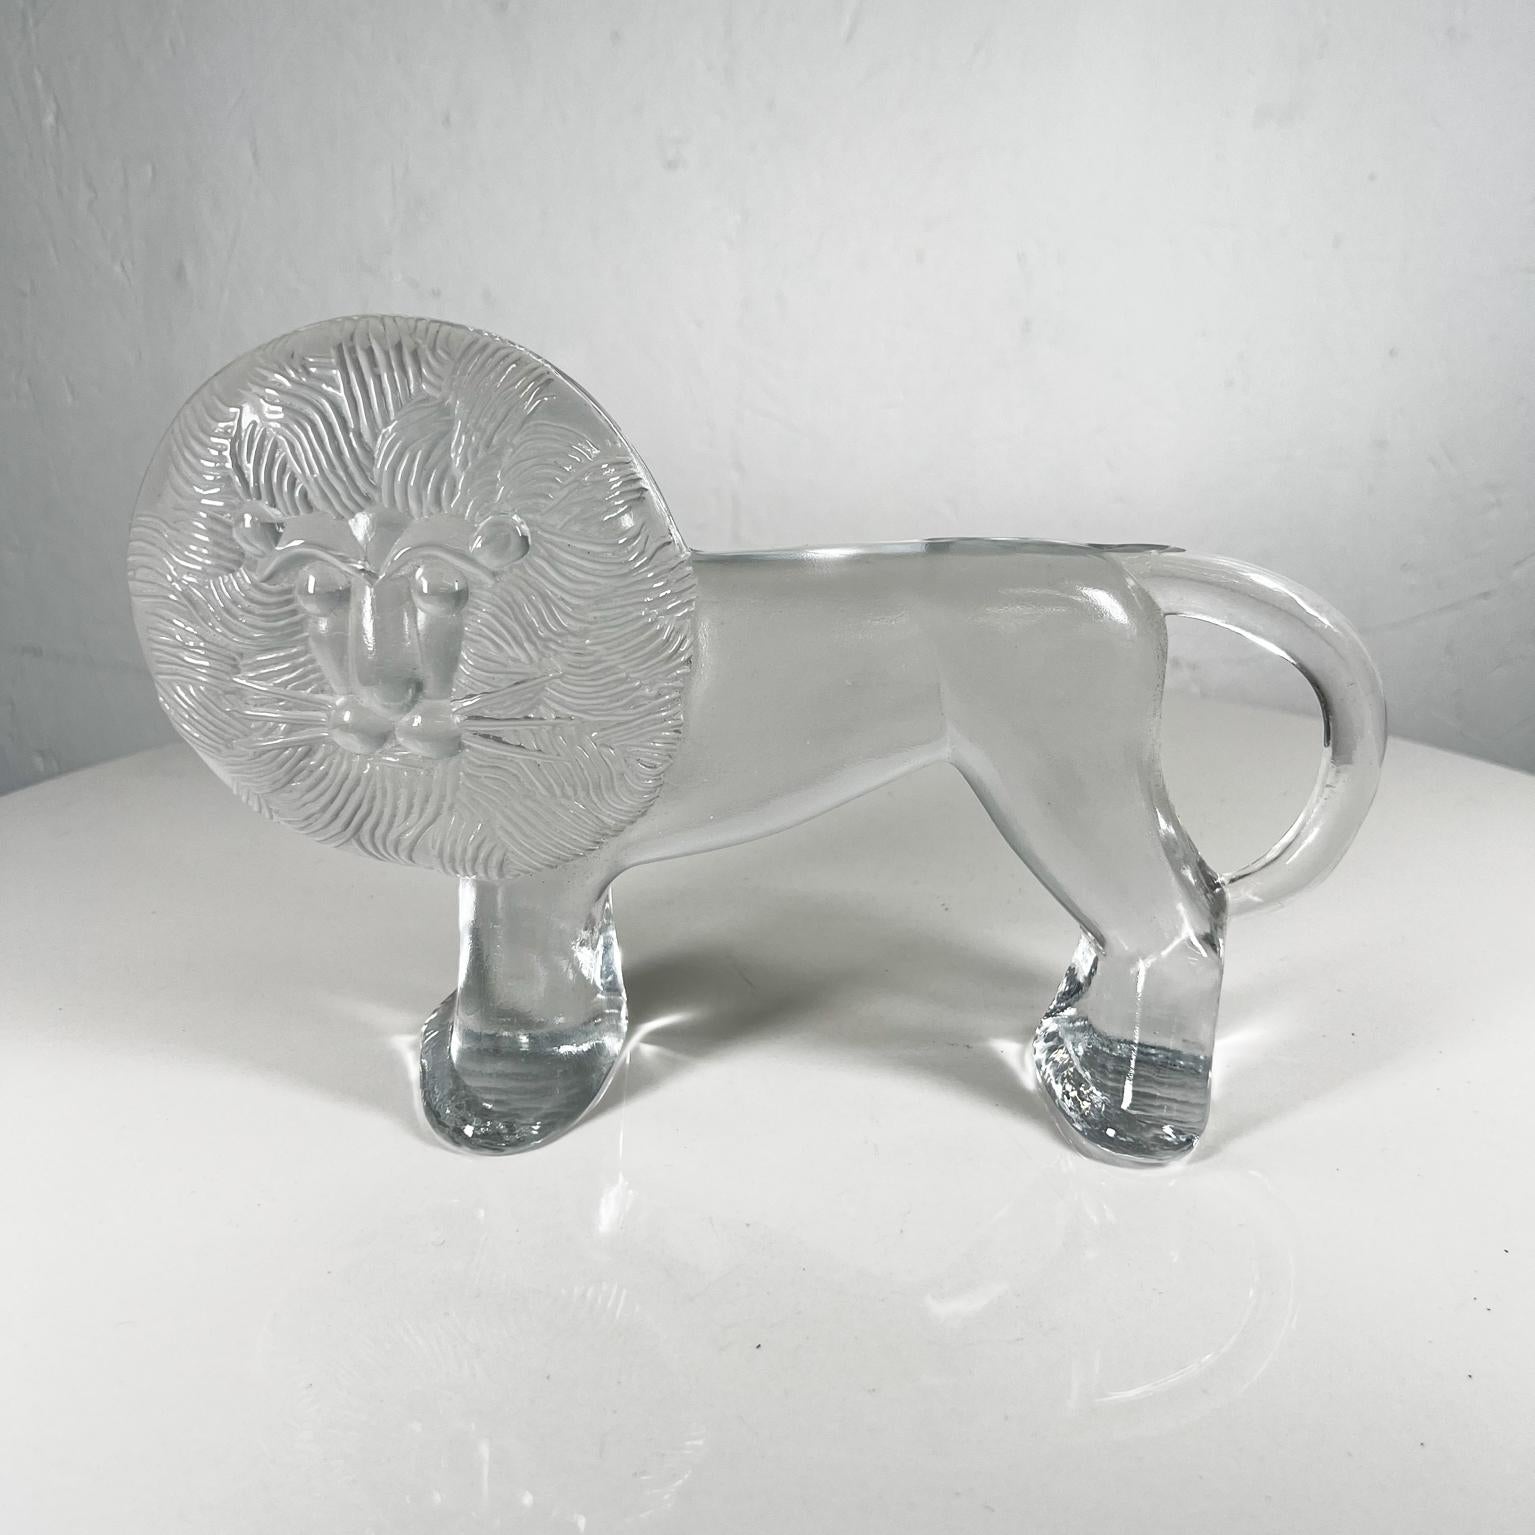 AMBIANIC présente
Pour Kosta Boda Art Verre Grand Lion Bertil Vallien Kennel Zoo
Sculpture de table en verre Elegant
10,25 x 6,5 x 2 d
Etat d'origine vintage et d'occasion
Se référer aux images ici s'il vous plaît.

.